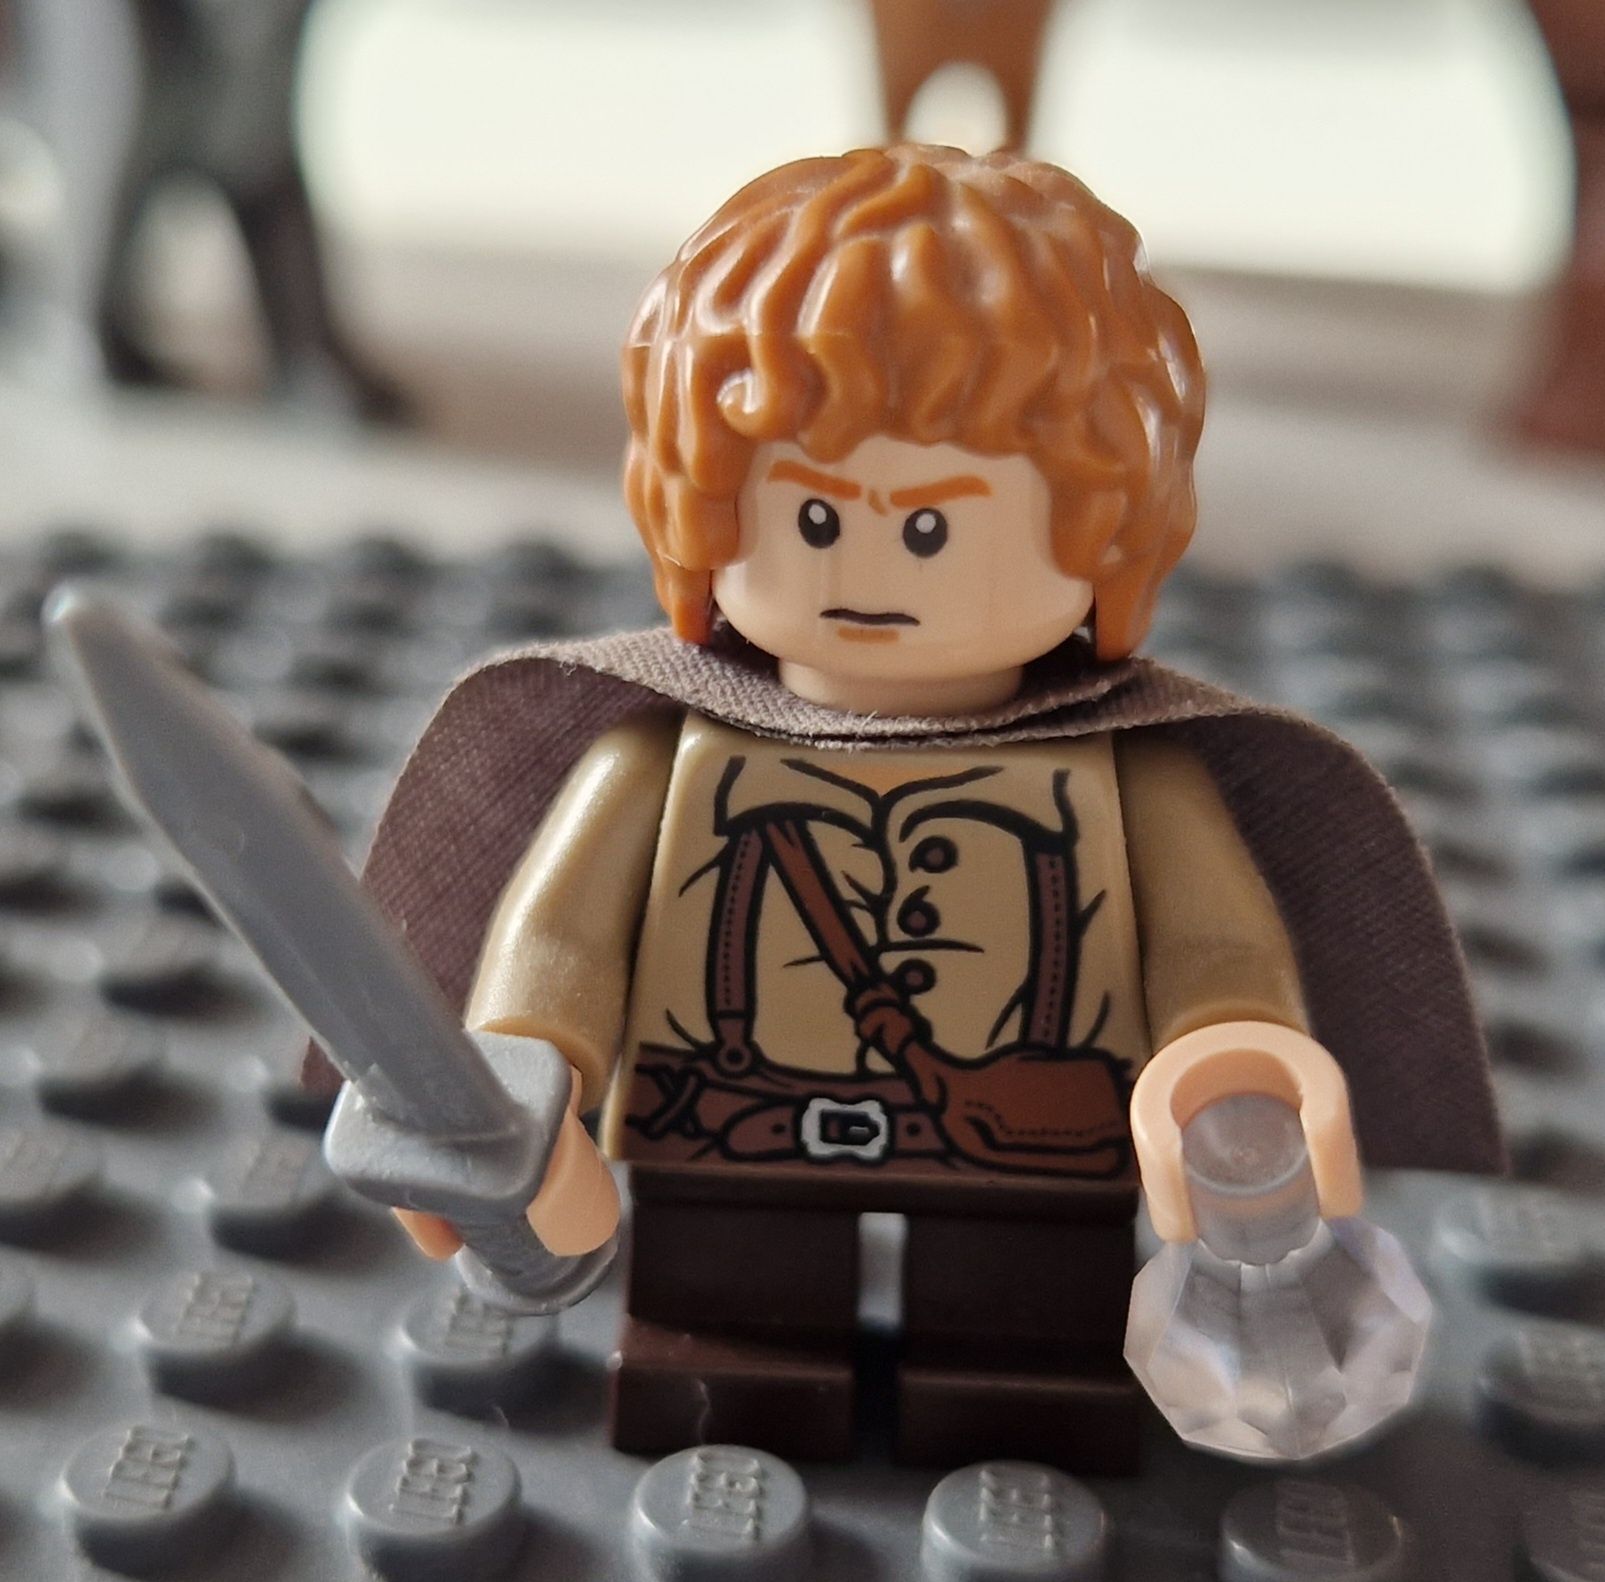 Lego lor004 Samwise Gamgee Władca Pierścieni/ Hobbit